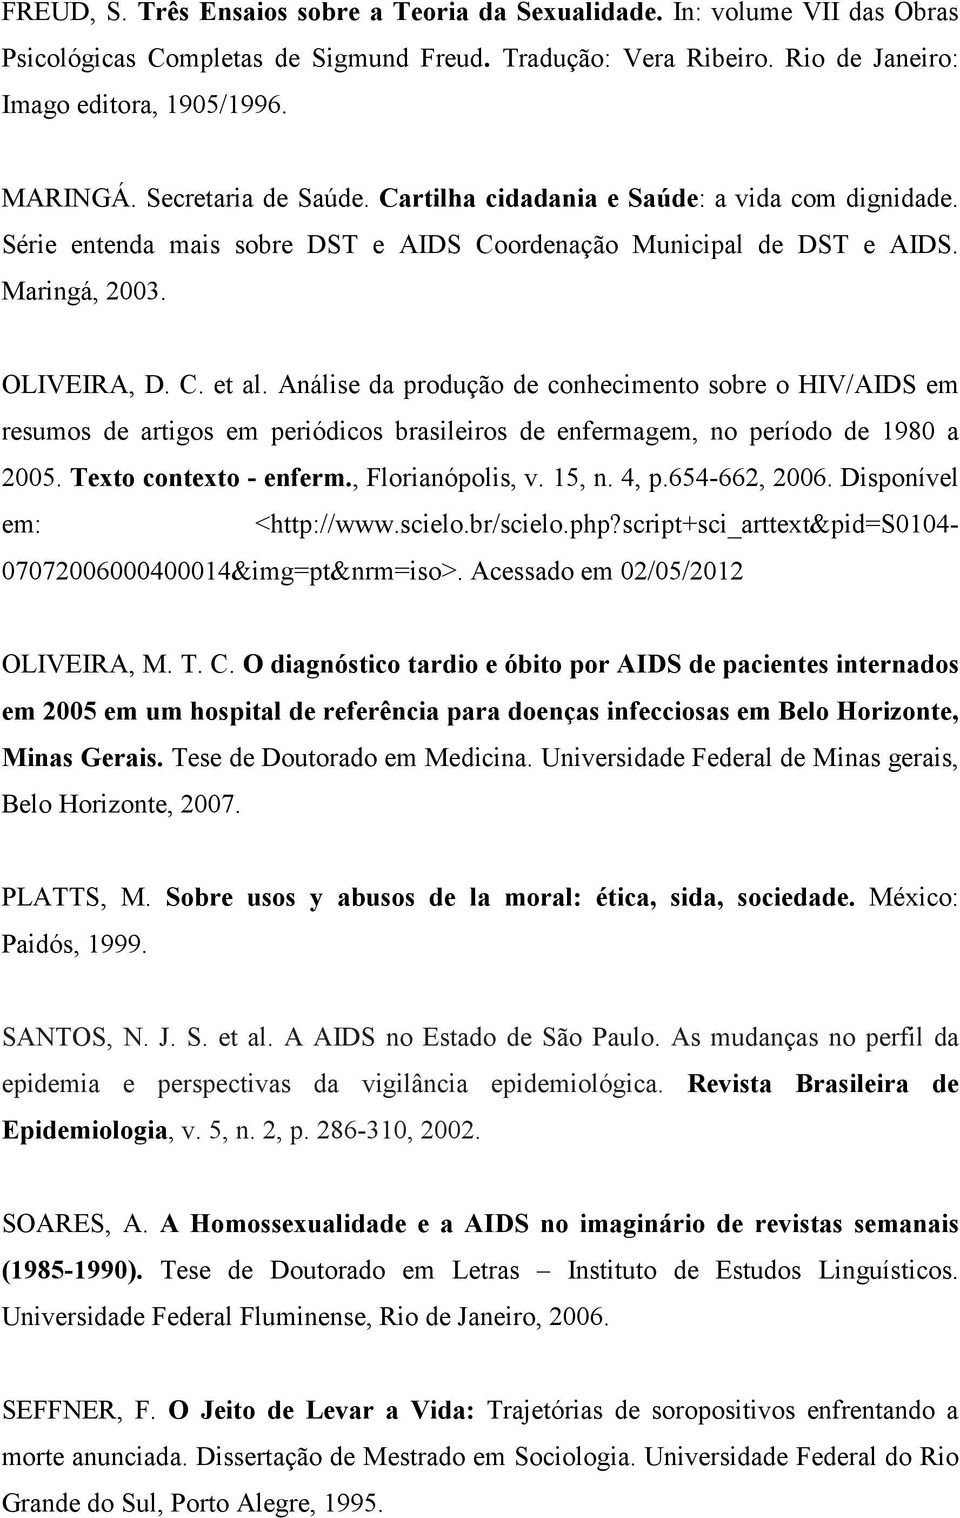 Análise da produção de conhecimento sobre o HIV/AIDS em resumos de artigos em periódicos brasileiros de enfermagem, no período de 1980 a 2005. Texto contexto - enferm., Florianópolis, v. 15, n. 4, p.